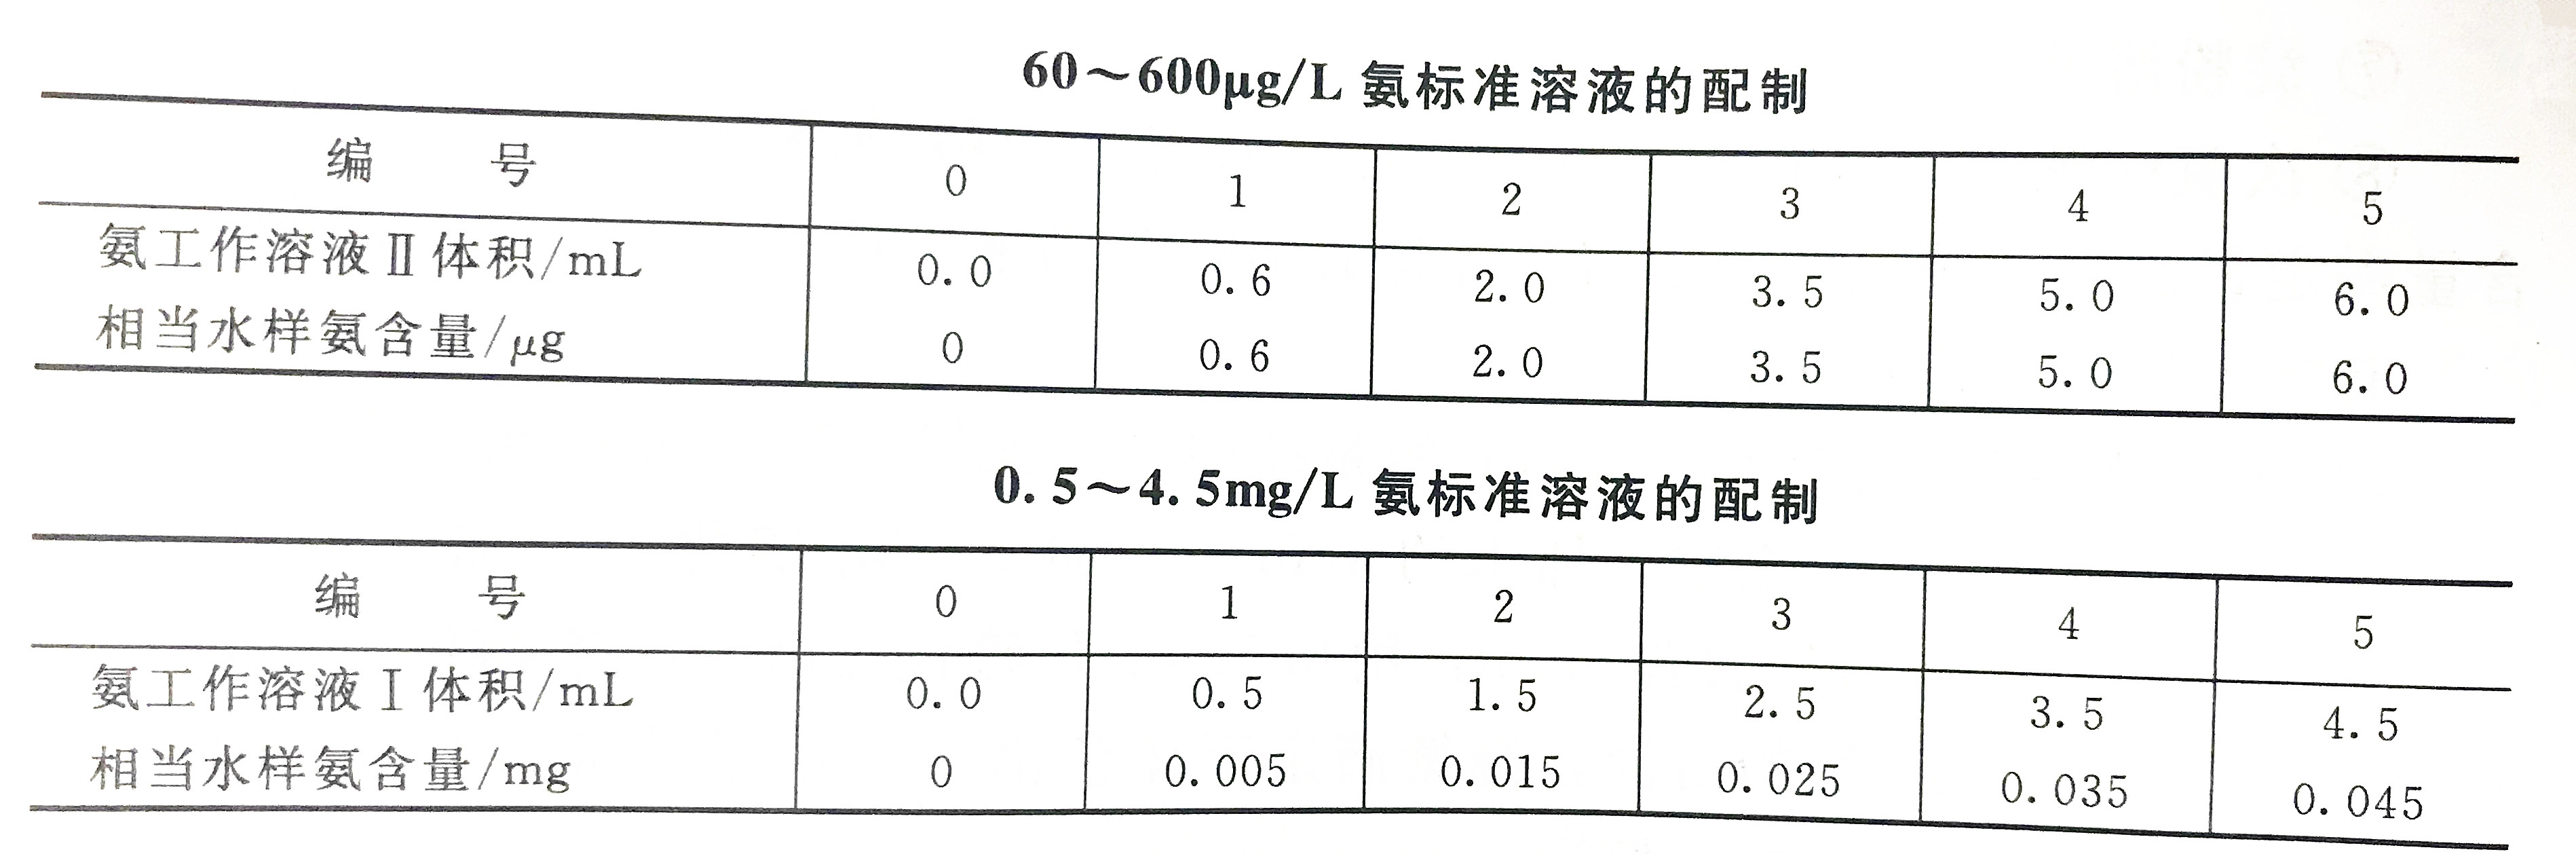 苯酚光度法檢測水中氨含量的步驟